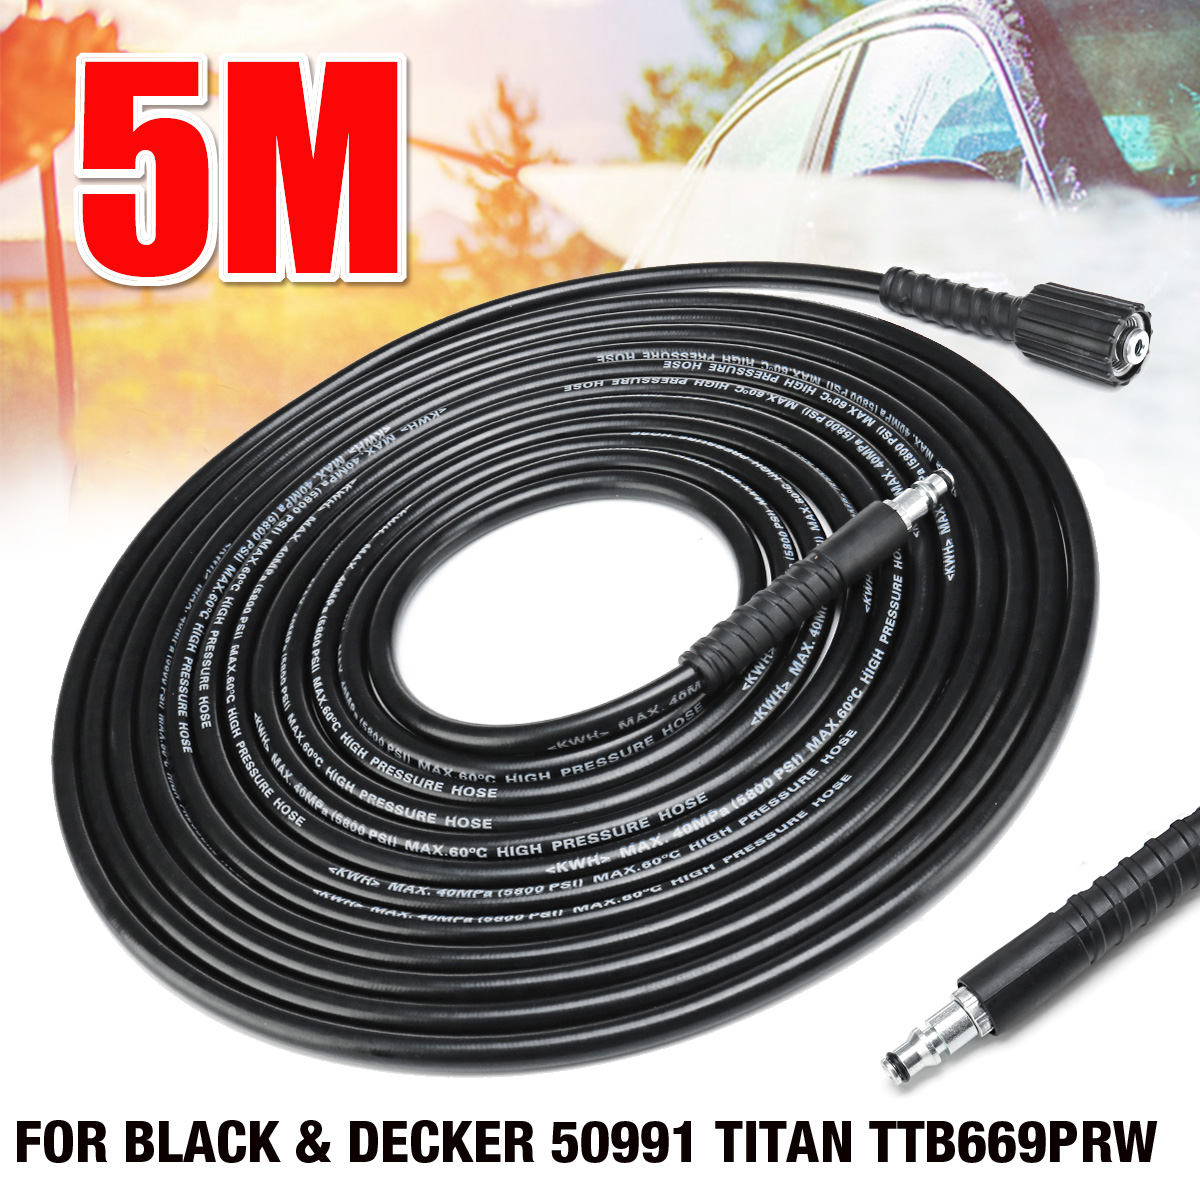 5M-High-Pressure-Water-Cleaner-Washer-Hose-for-BLACK--DECKER-50991-TITAN-TTB669PRW-1415136-2